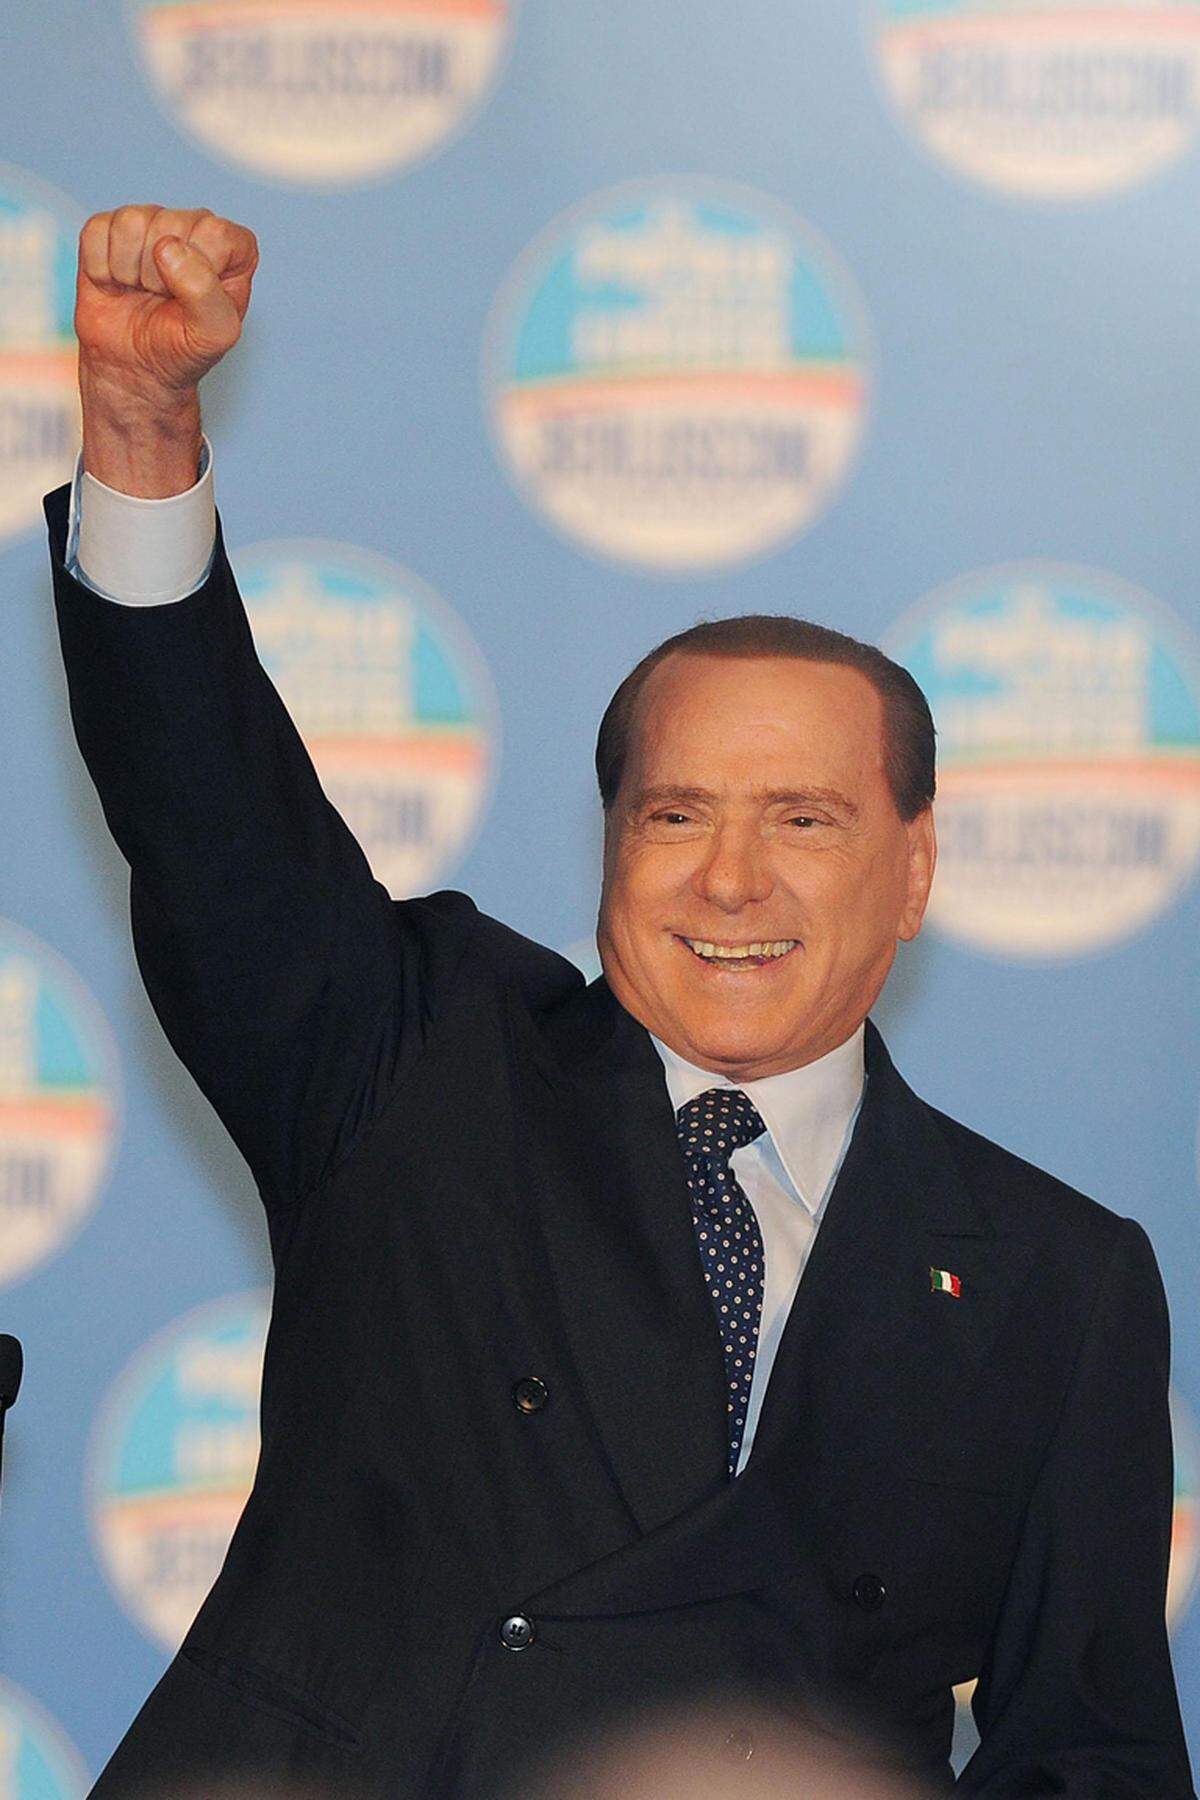 Medienzar und Ex-Premier Silvio Berlusconi will eine Fortsetzung von Montis Sparpolitik verhindern. Er verspricht den Italienern unter anderem die Rückzahlung der kürzlich eingeführten Immobiliensteuer. Mit solchen Versprechen konnte die Mitte-Rechts-Allianz aus Berlusconis "Volk der Freiheit" (PdL) und drei weiteren Parteien zuletzt in den Umfragen aufholen: Rund 28 Prozent sagten Meinungsforscher dem Bündnis in den letzten zulässigen Befragungen zwei Wochen vor der Wahl voraus.